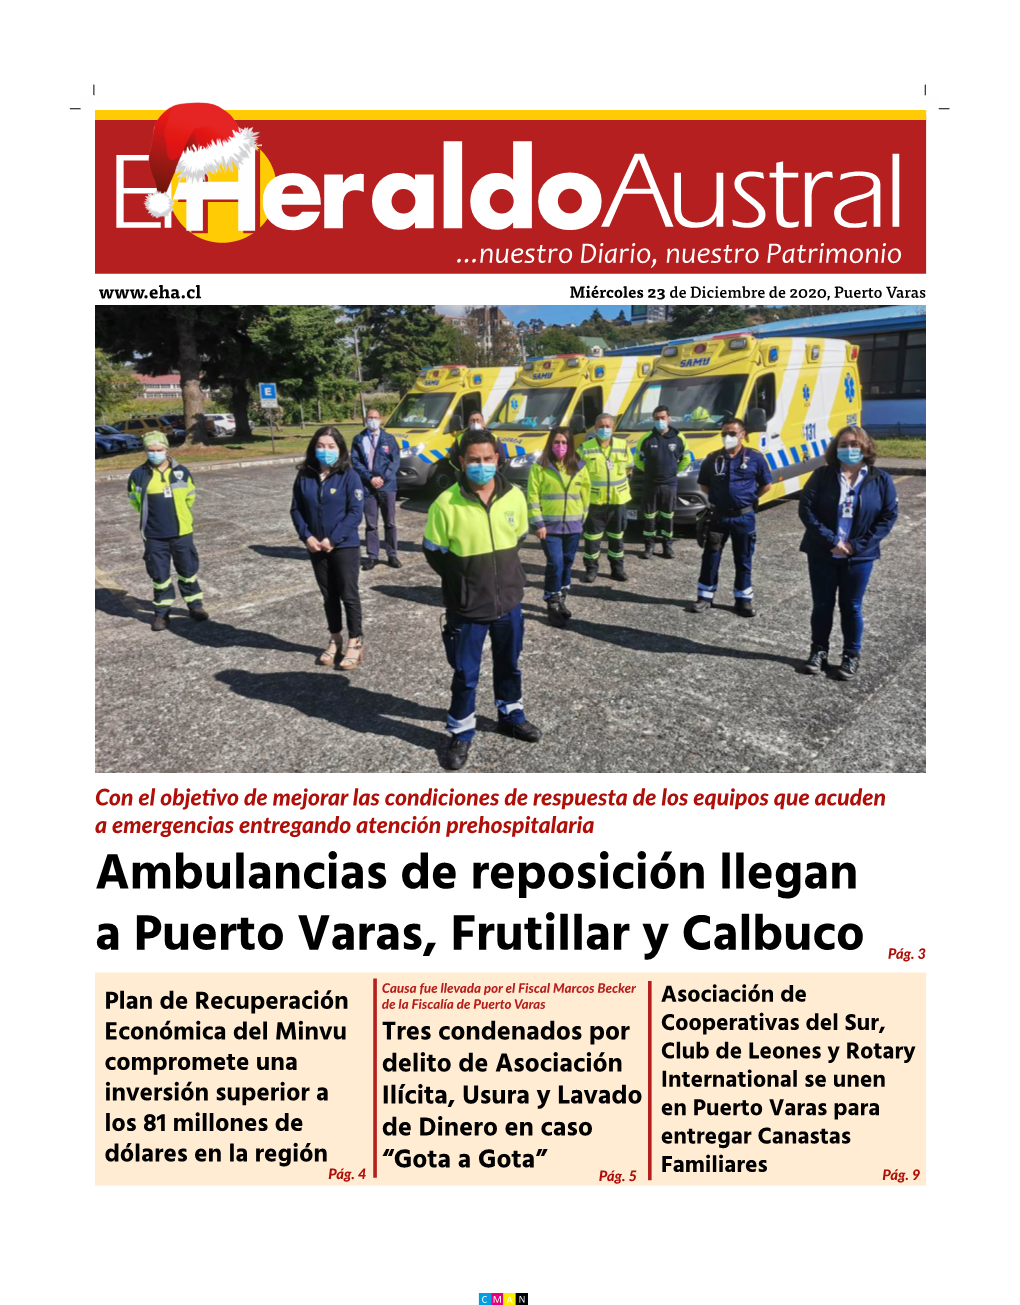 Ambulancias De Reposición Llegan a Puerto Varas, Frutillar Y Calbuco Pág